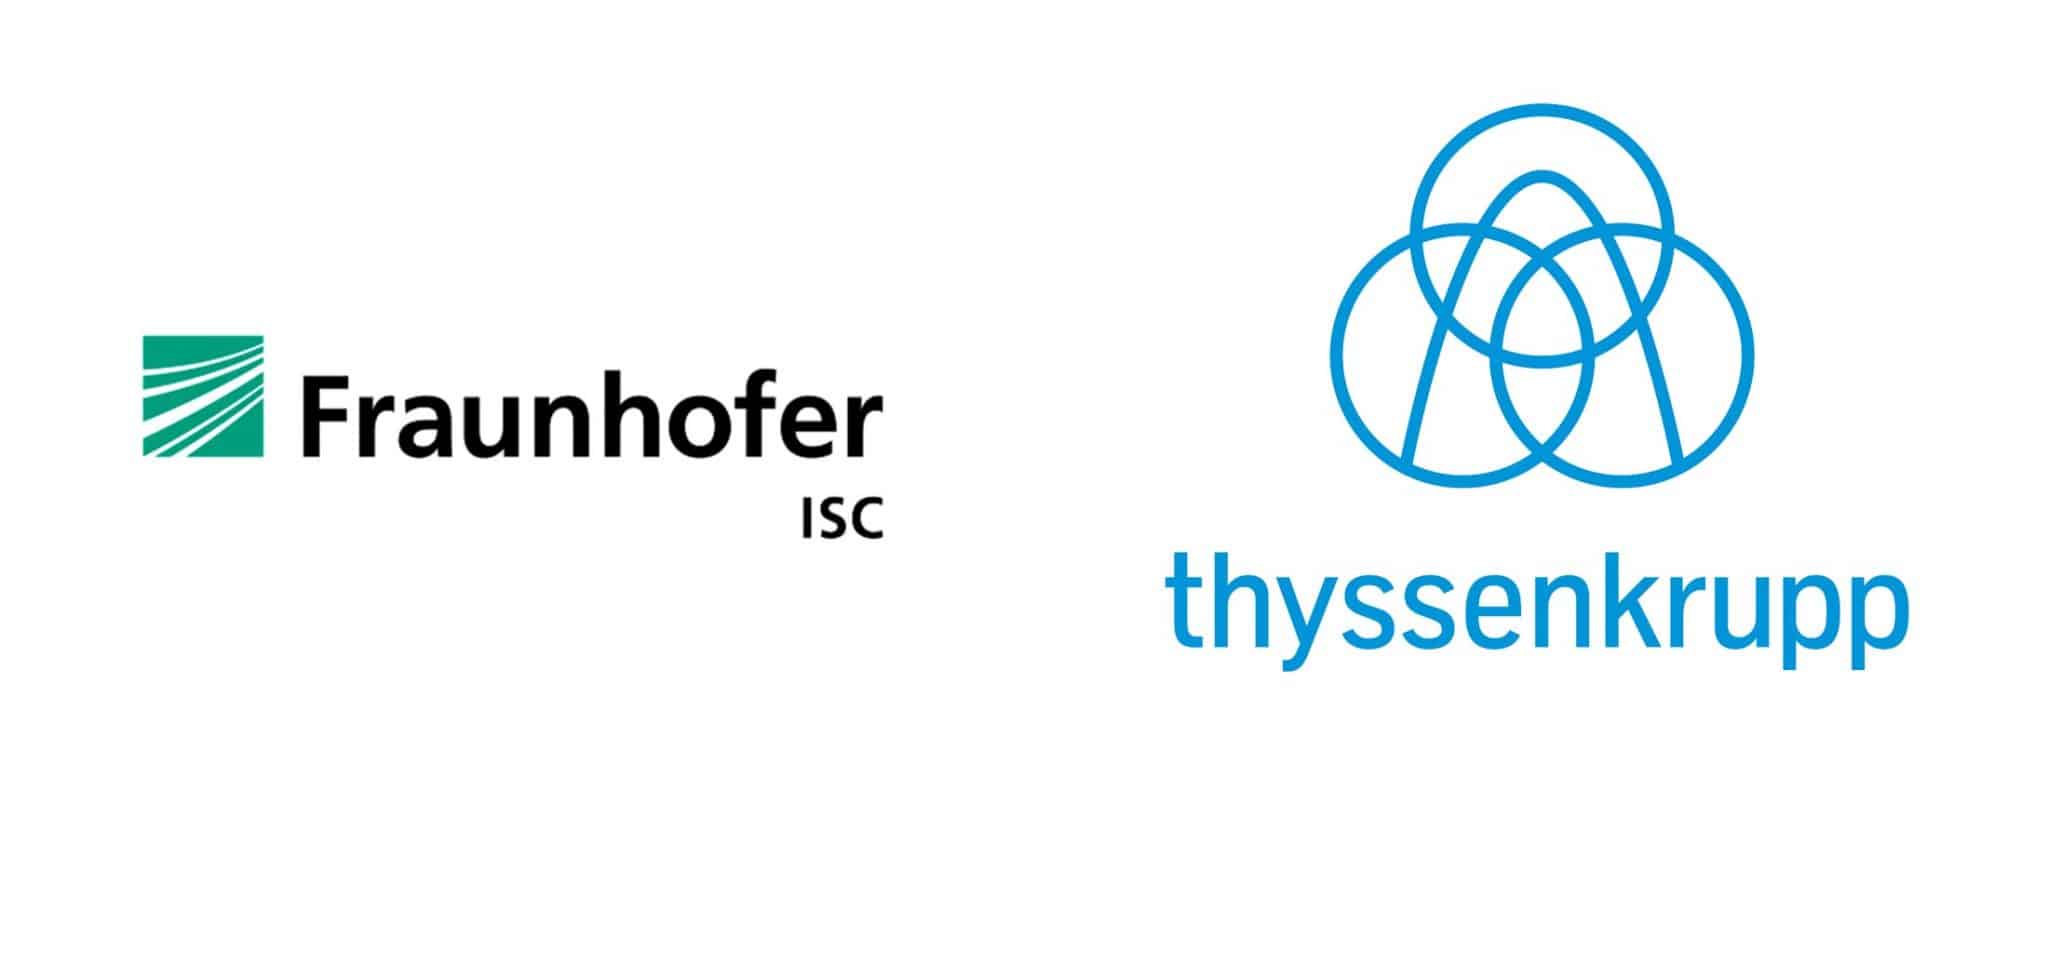 Fraunhofer IWES, Seminar Stellenanzeigen texten, Employer Branding, ThyssenKrupp Logo